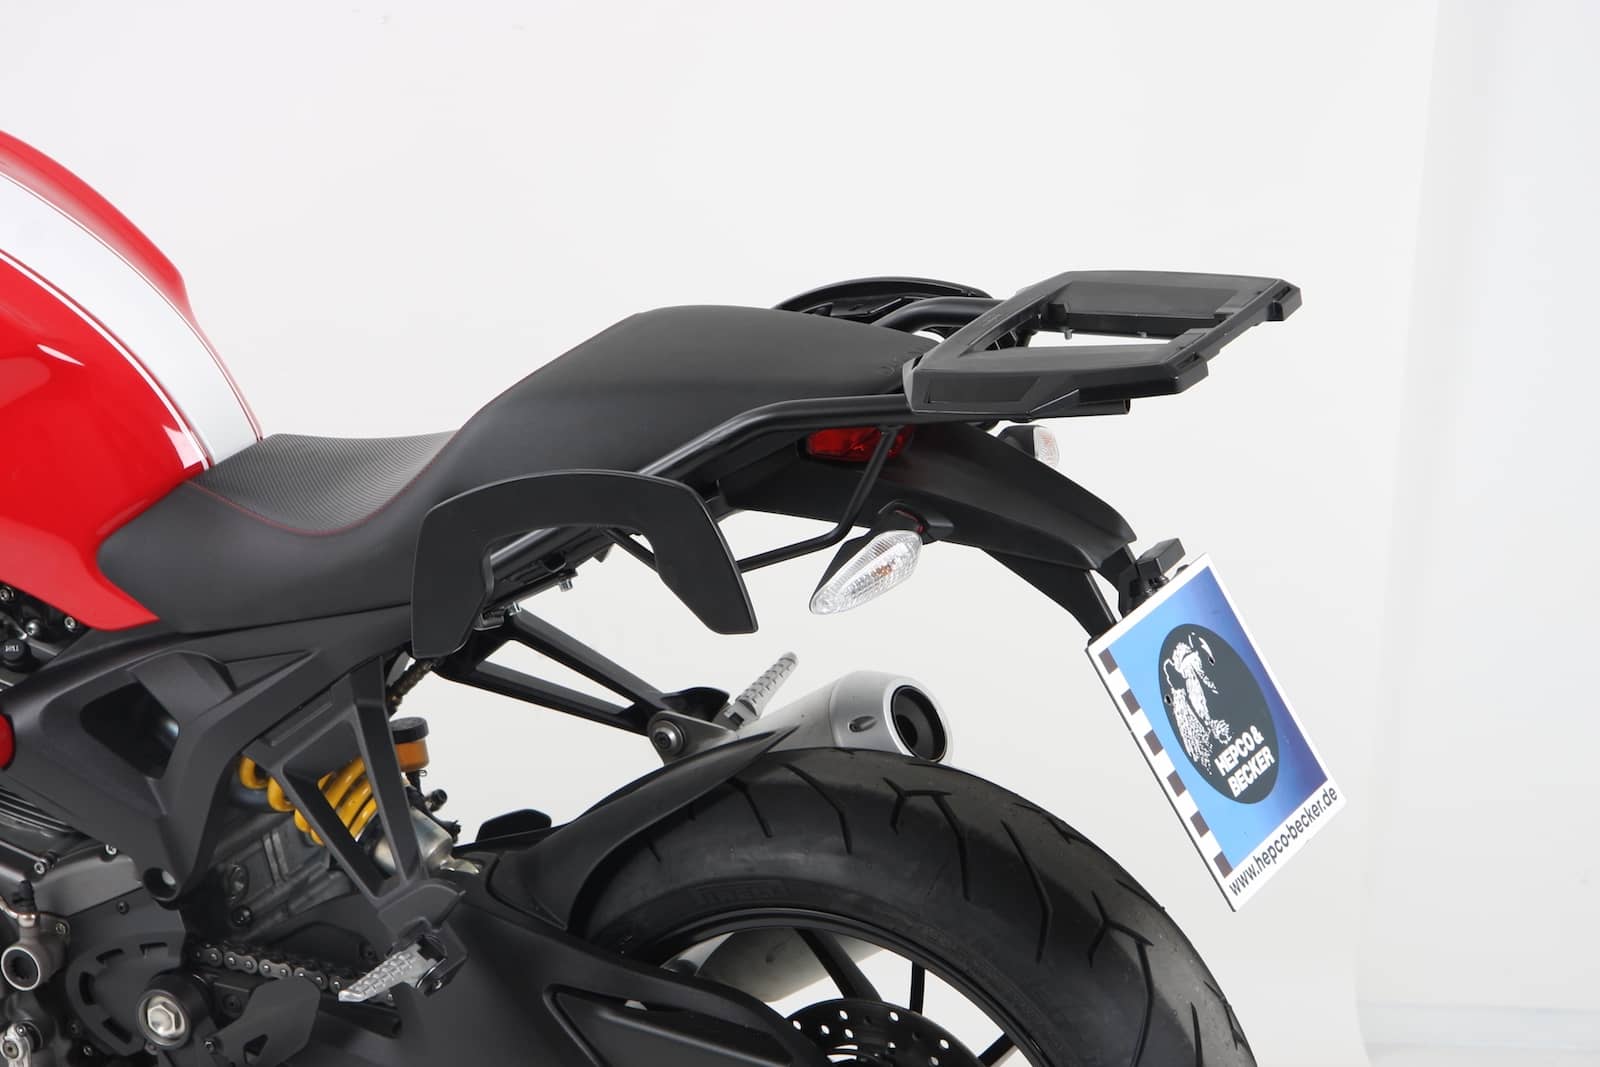 C-Bow sidecarrier for Ducati Monster 1100 evo (2011-2013)